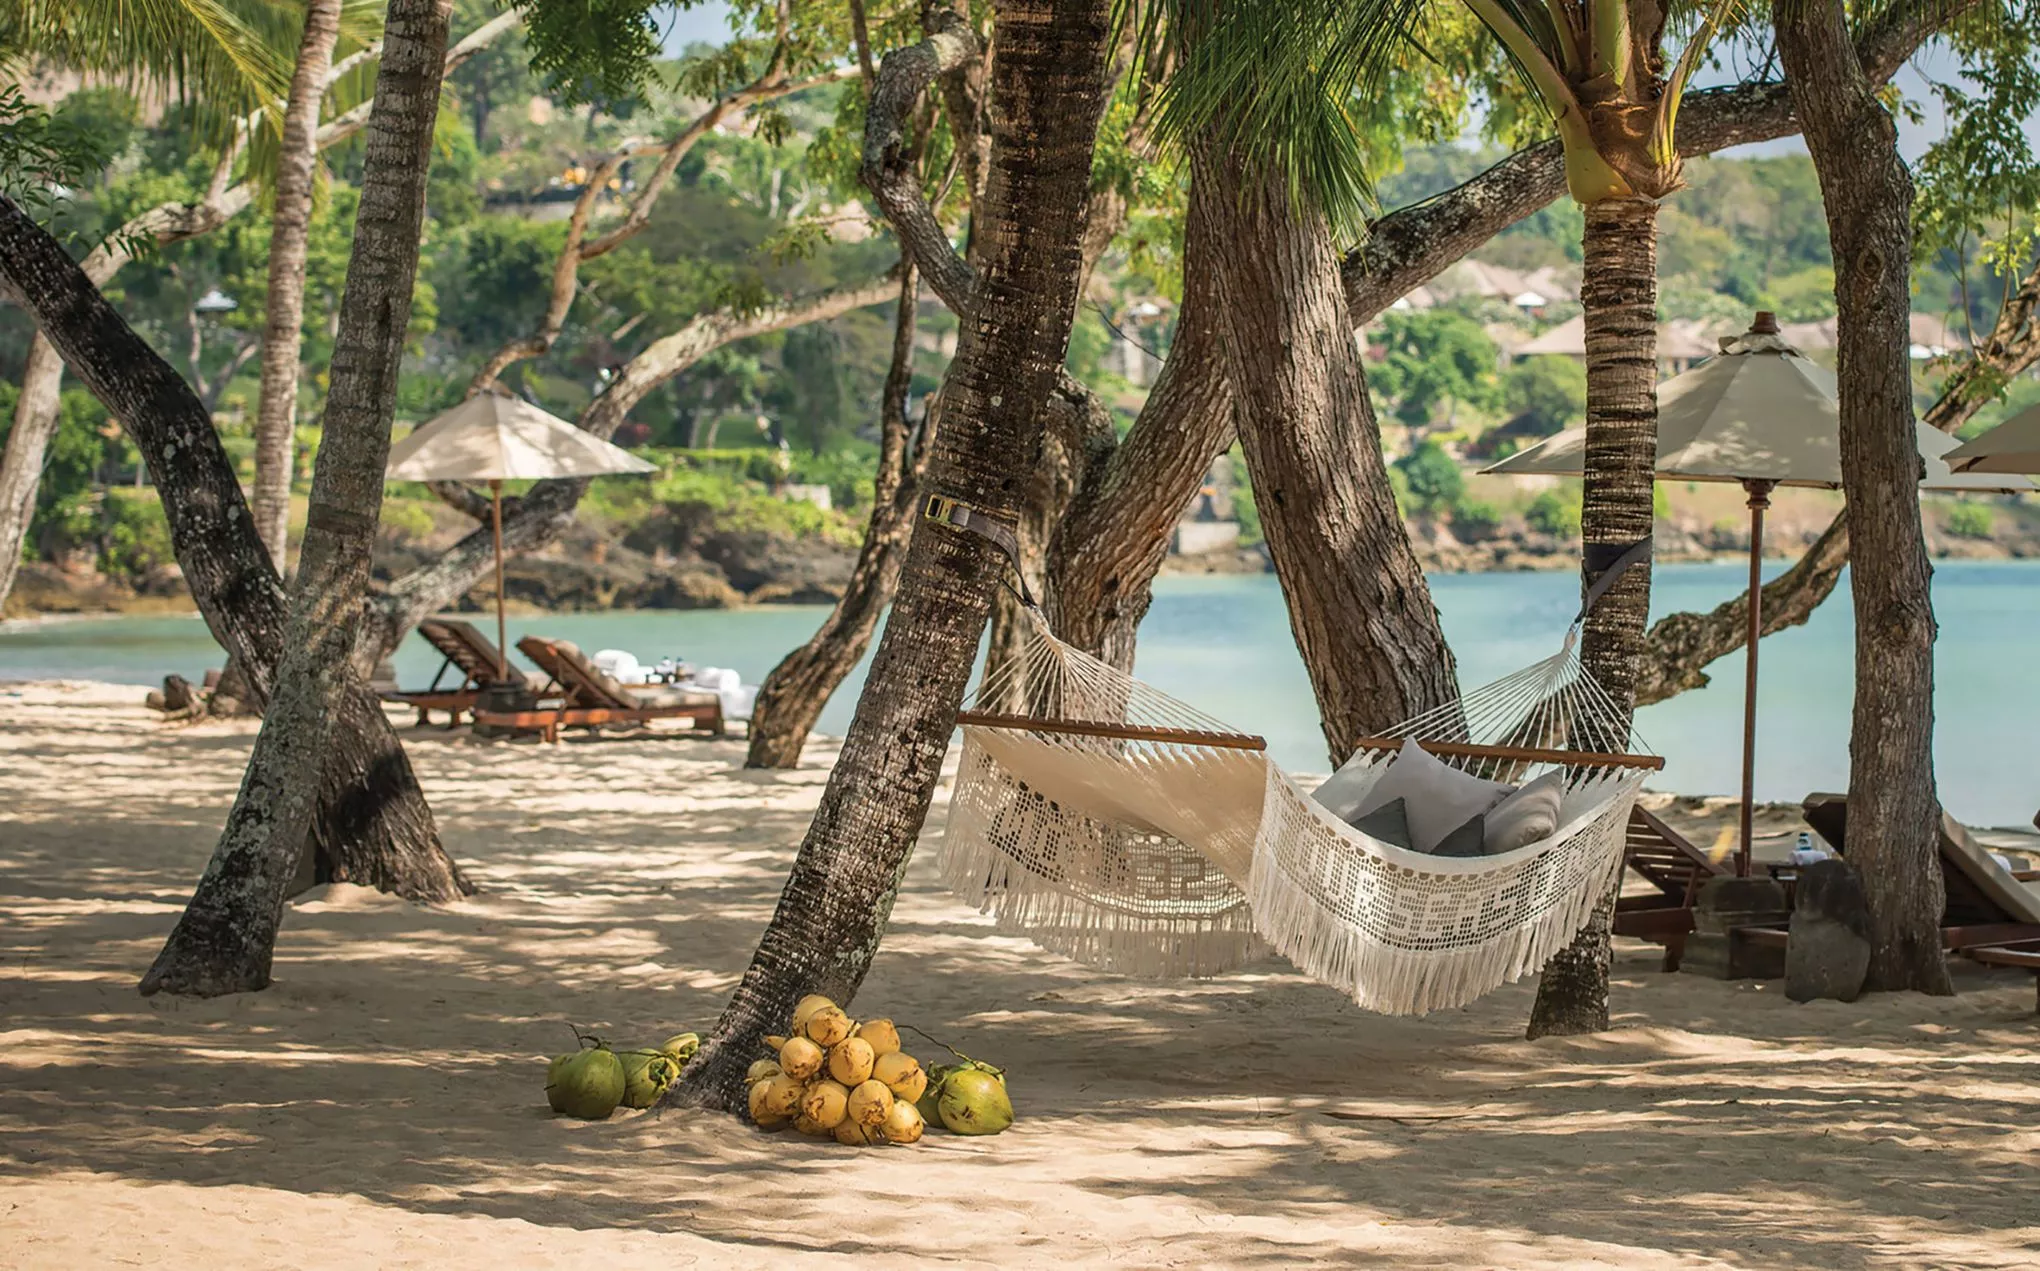 Entspannung pur in der Hängematte unter Kokospalmen